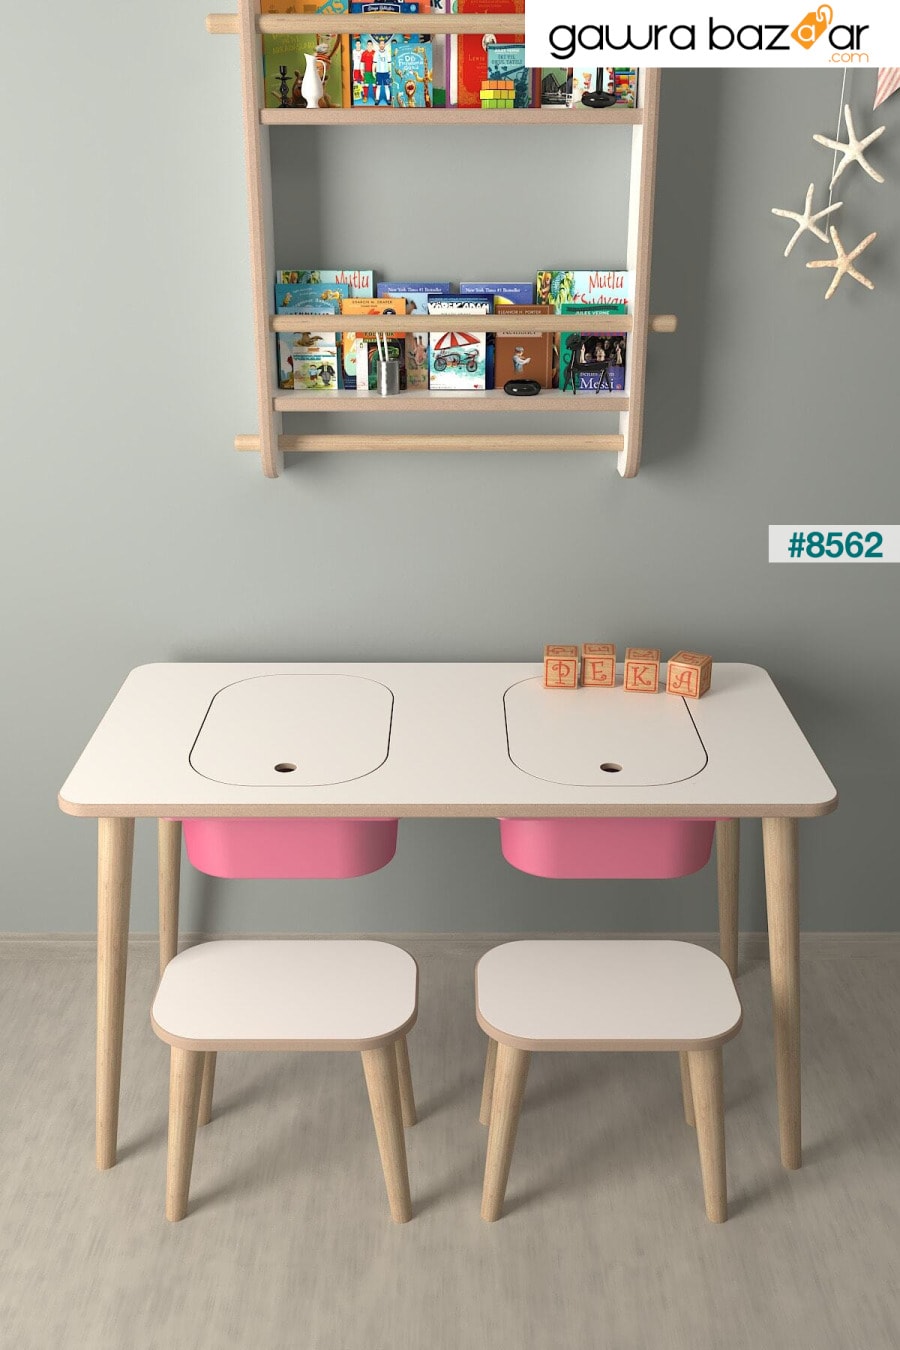 طاولة لعب وأنشطة للأطفال - 2 مقعد - مع سلة وردية PEKA 1